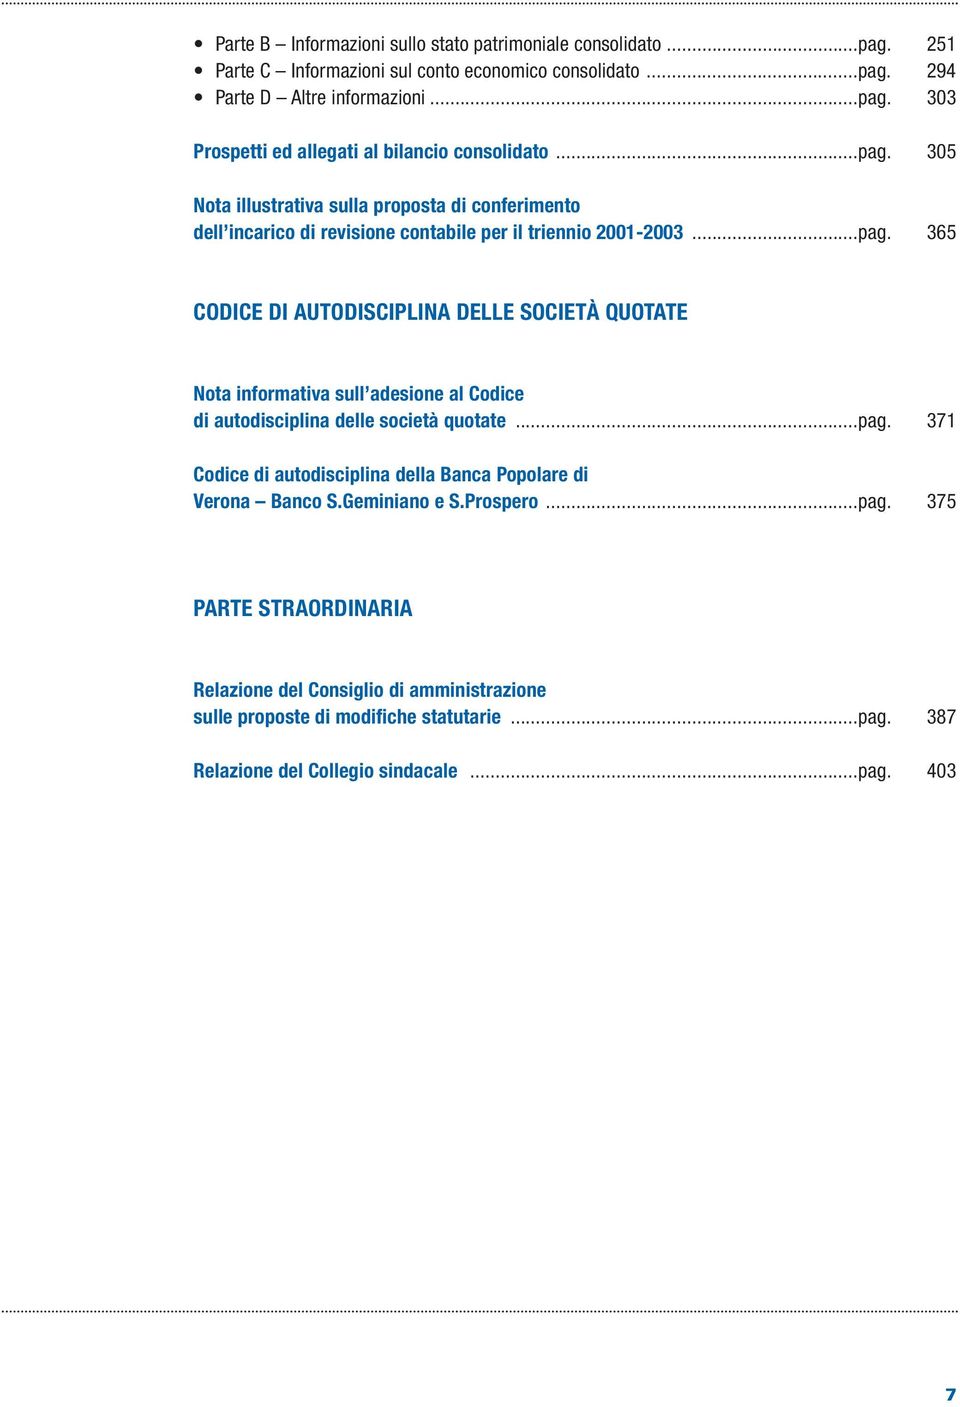 ..pag. 371 Codice di autodisciplina della Banca Popolare di Verona Banco S.Geminiano e S.Prospero...pag. 375 PARTE STRAORDINARIA Relazione del Consiglio di amministrazione sulle proposte di modifiche statutarie.